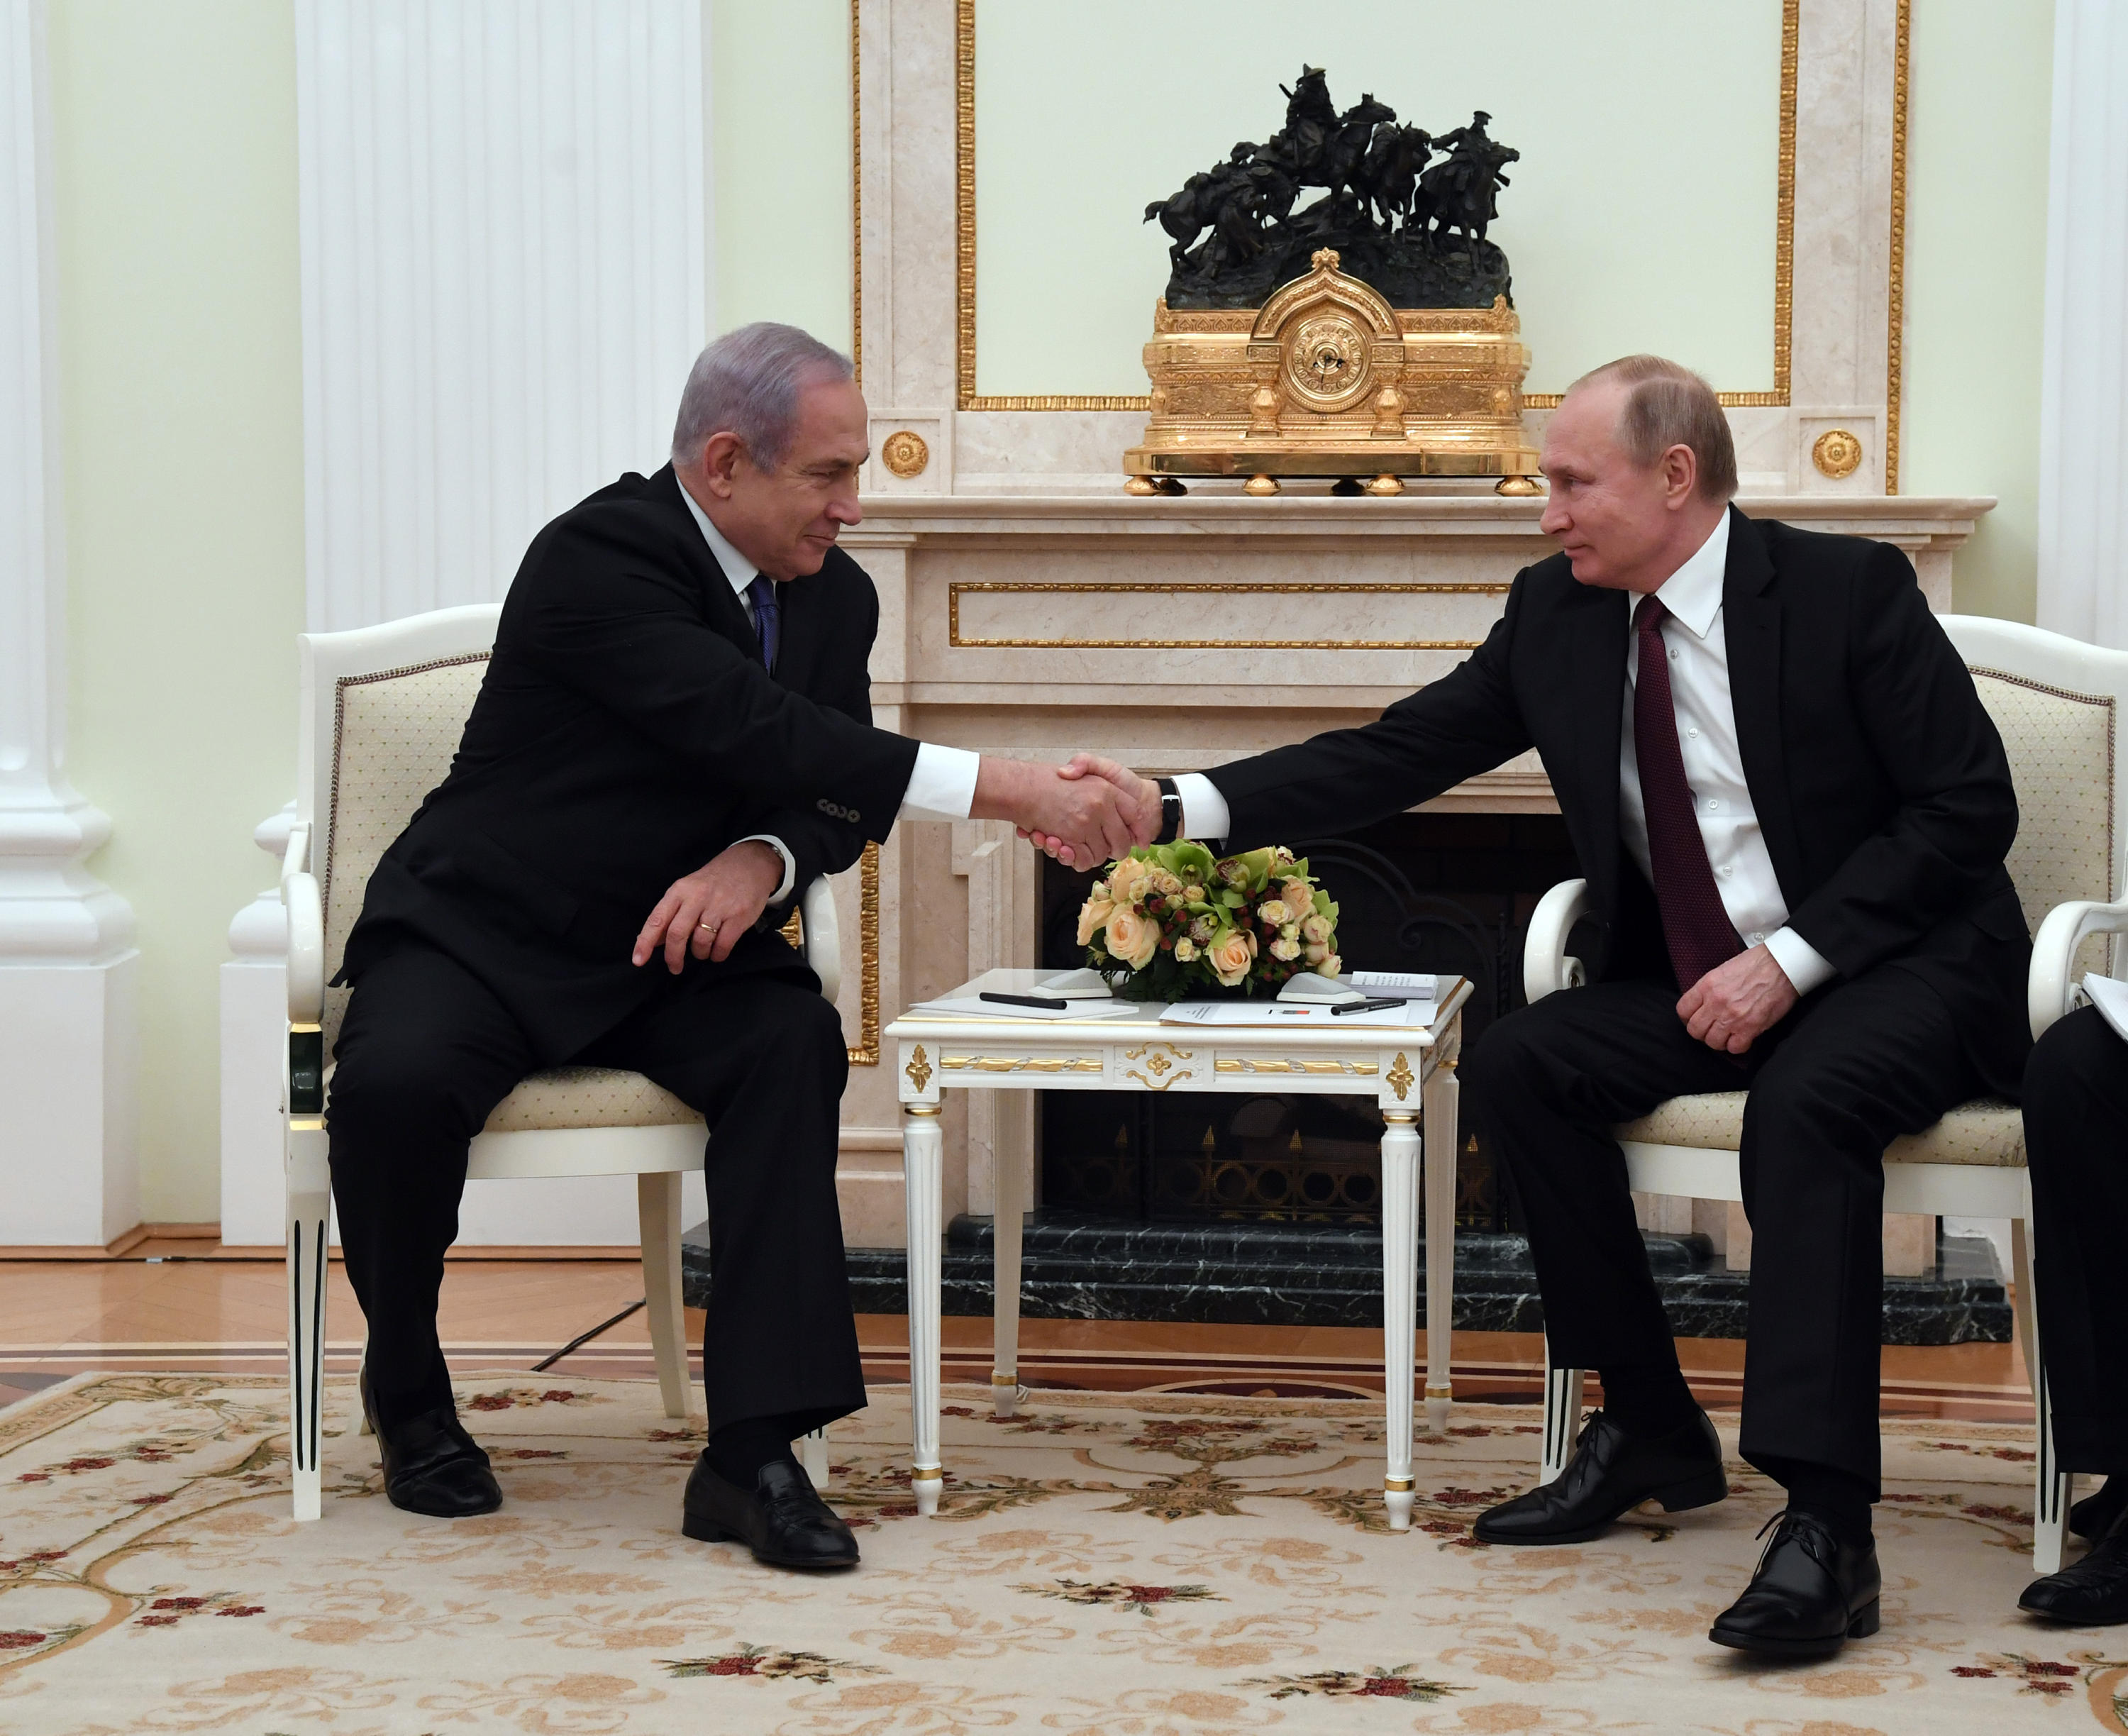 ראש הממשלה בנימין נתניהו נפגש עם נשיא רוסיה ולדימיר פוטין בקרמלין במוסקבה. צילום חיים צח לעמ (3)